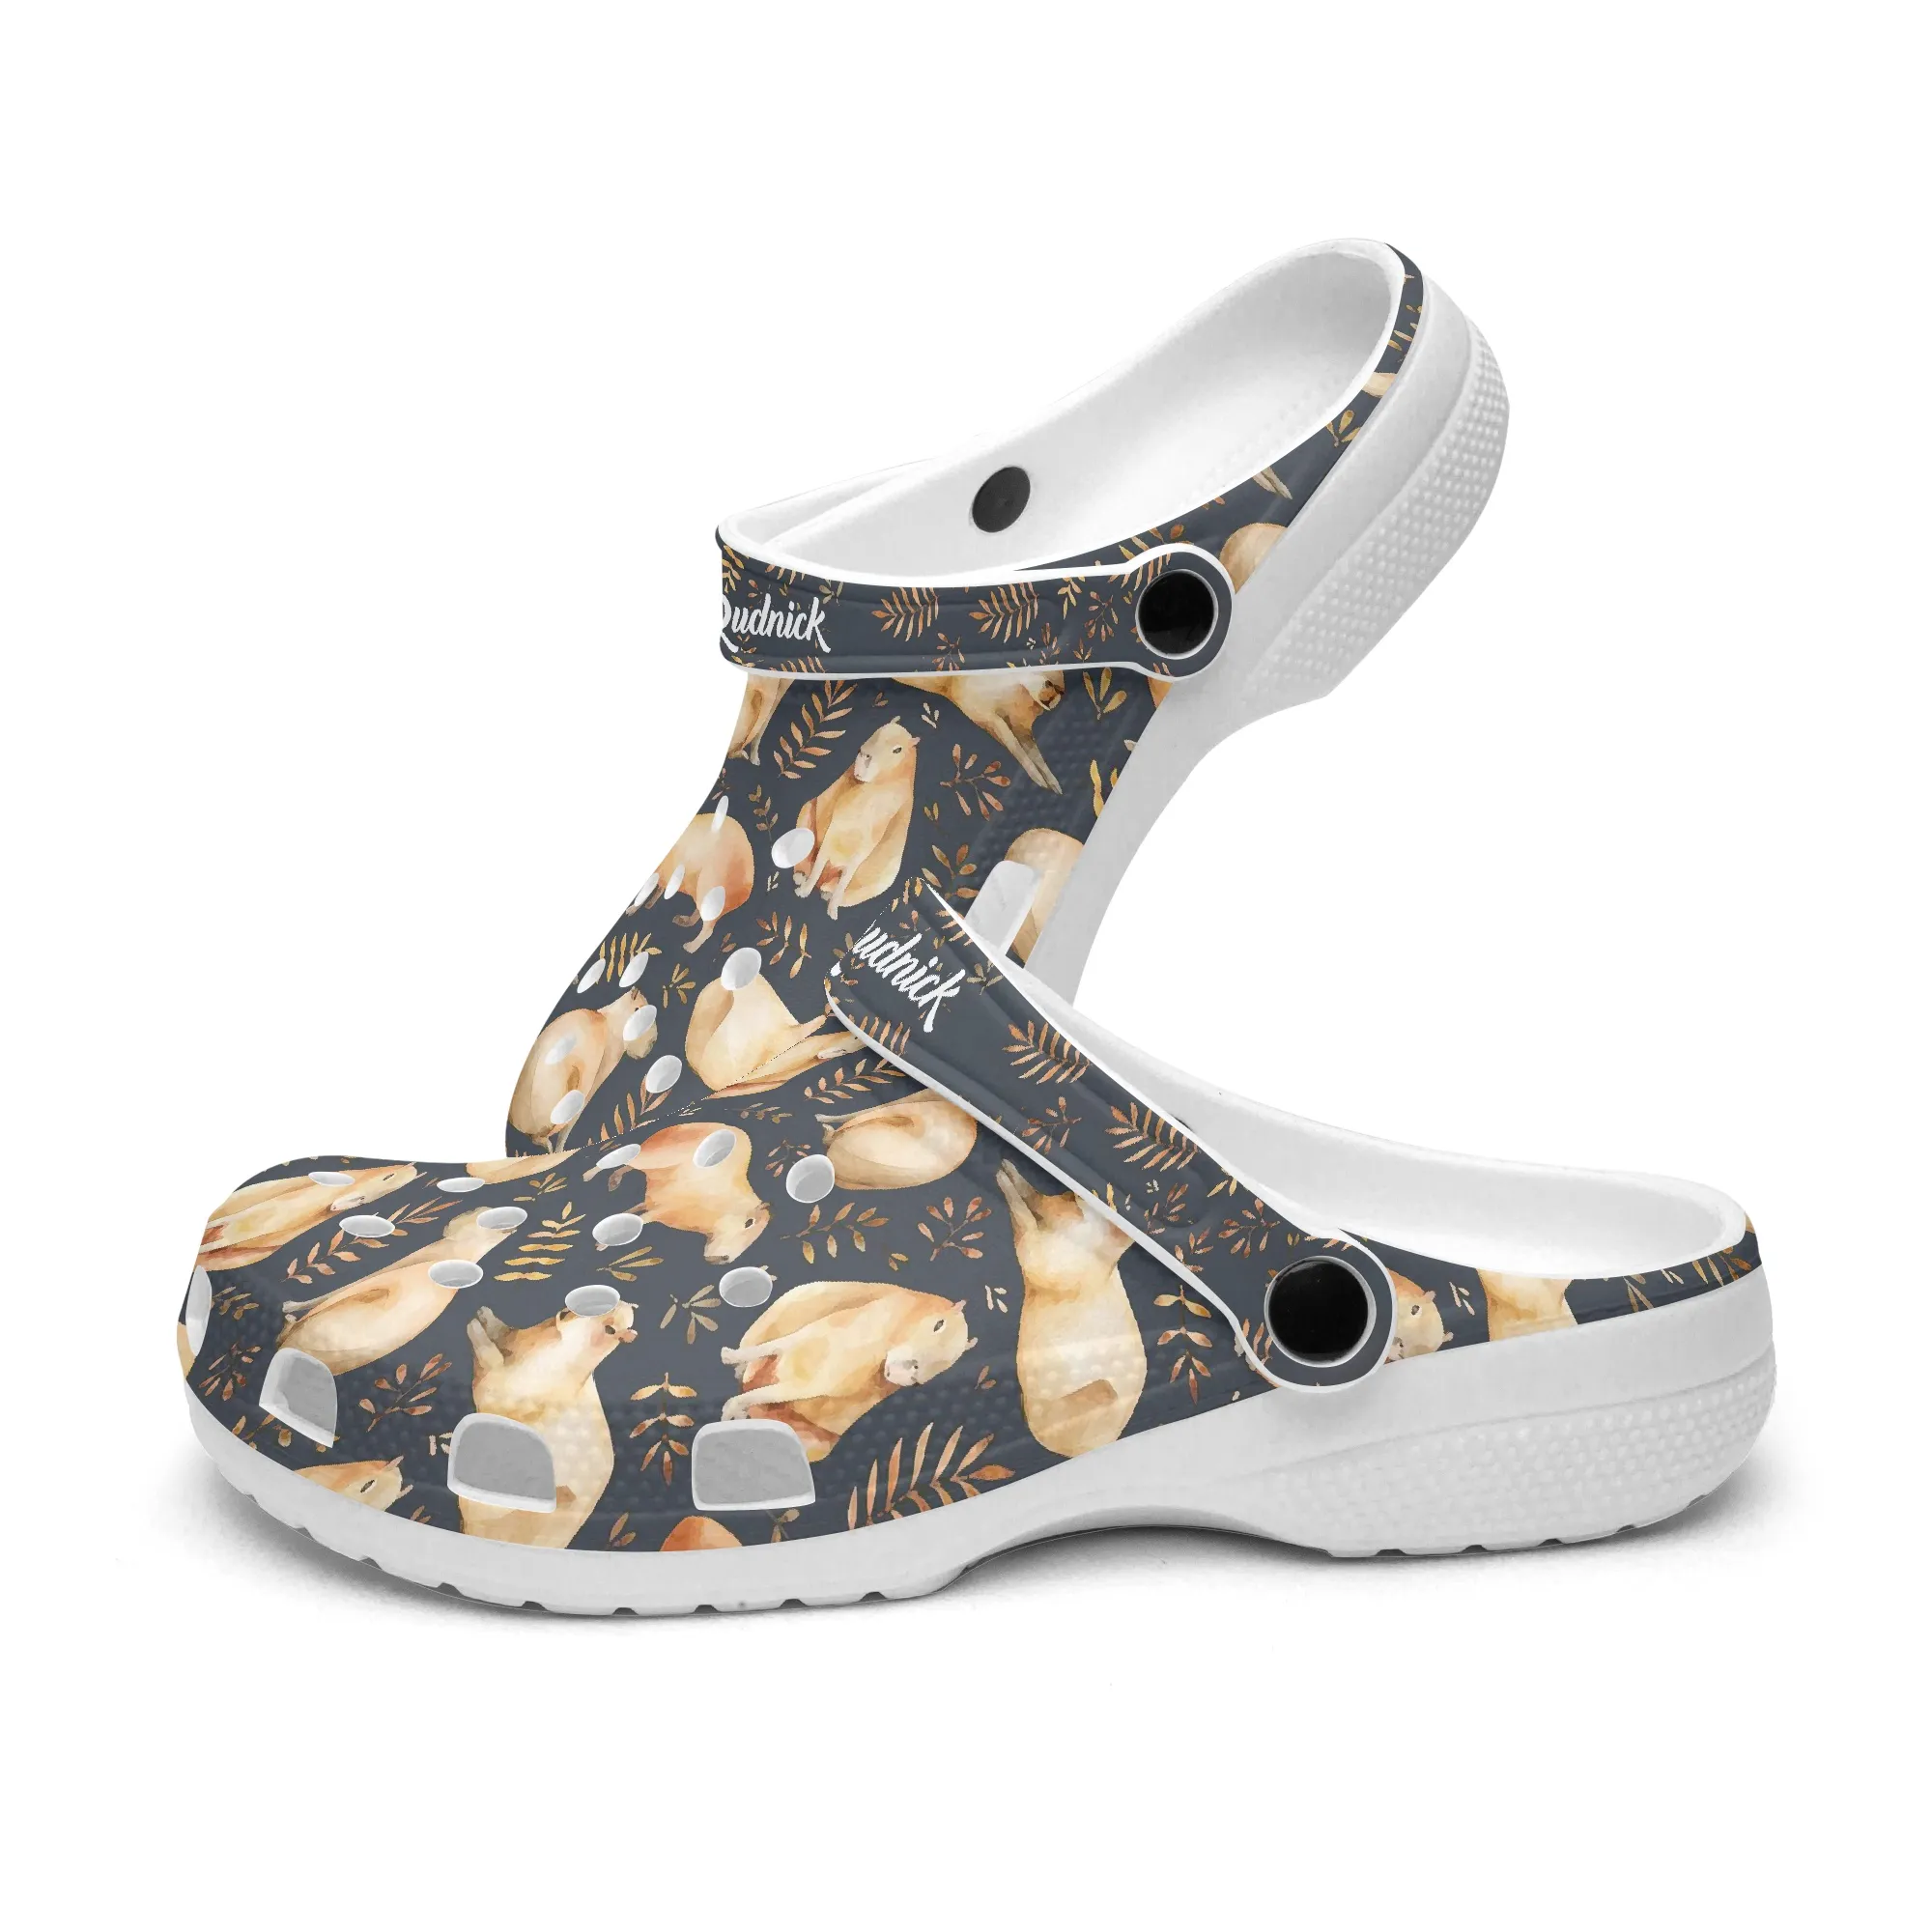 Benutzerdefinierte Hausschuhe DIY Unisex Flip-Flops Frauen Slipper Casual Beach Slides Sommer klassische Mode Sandale Trainer 045